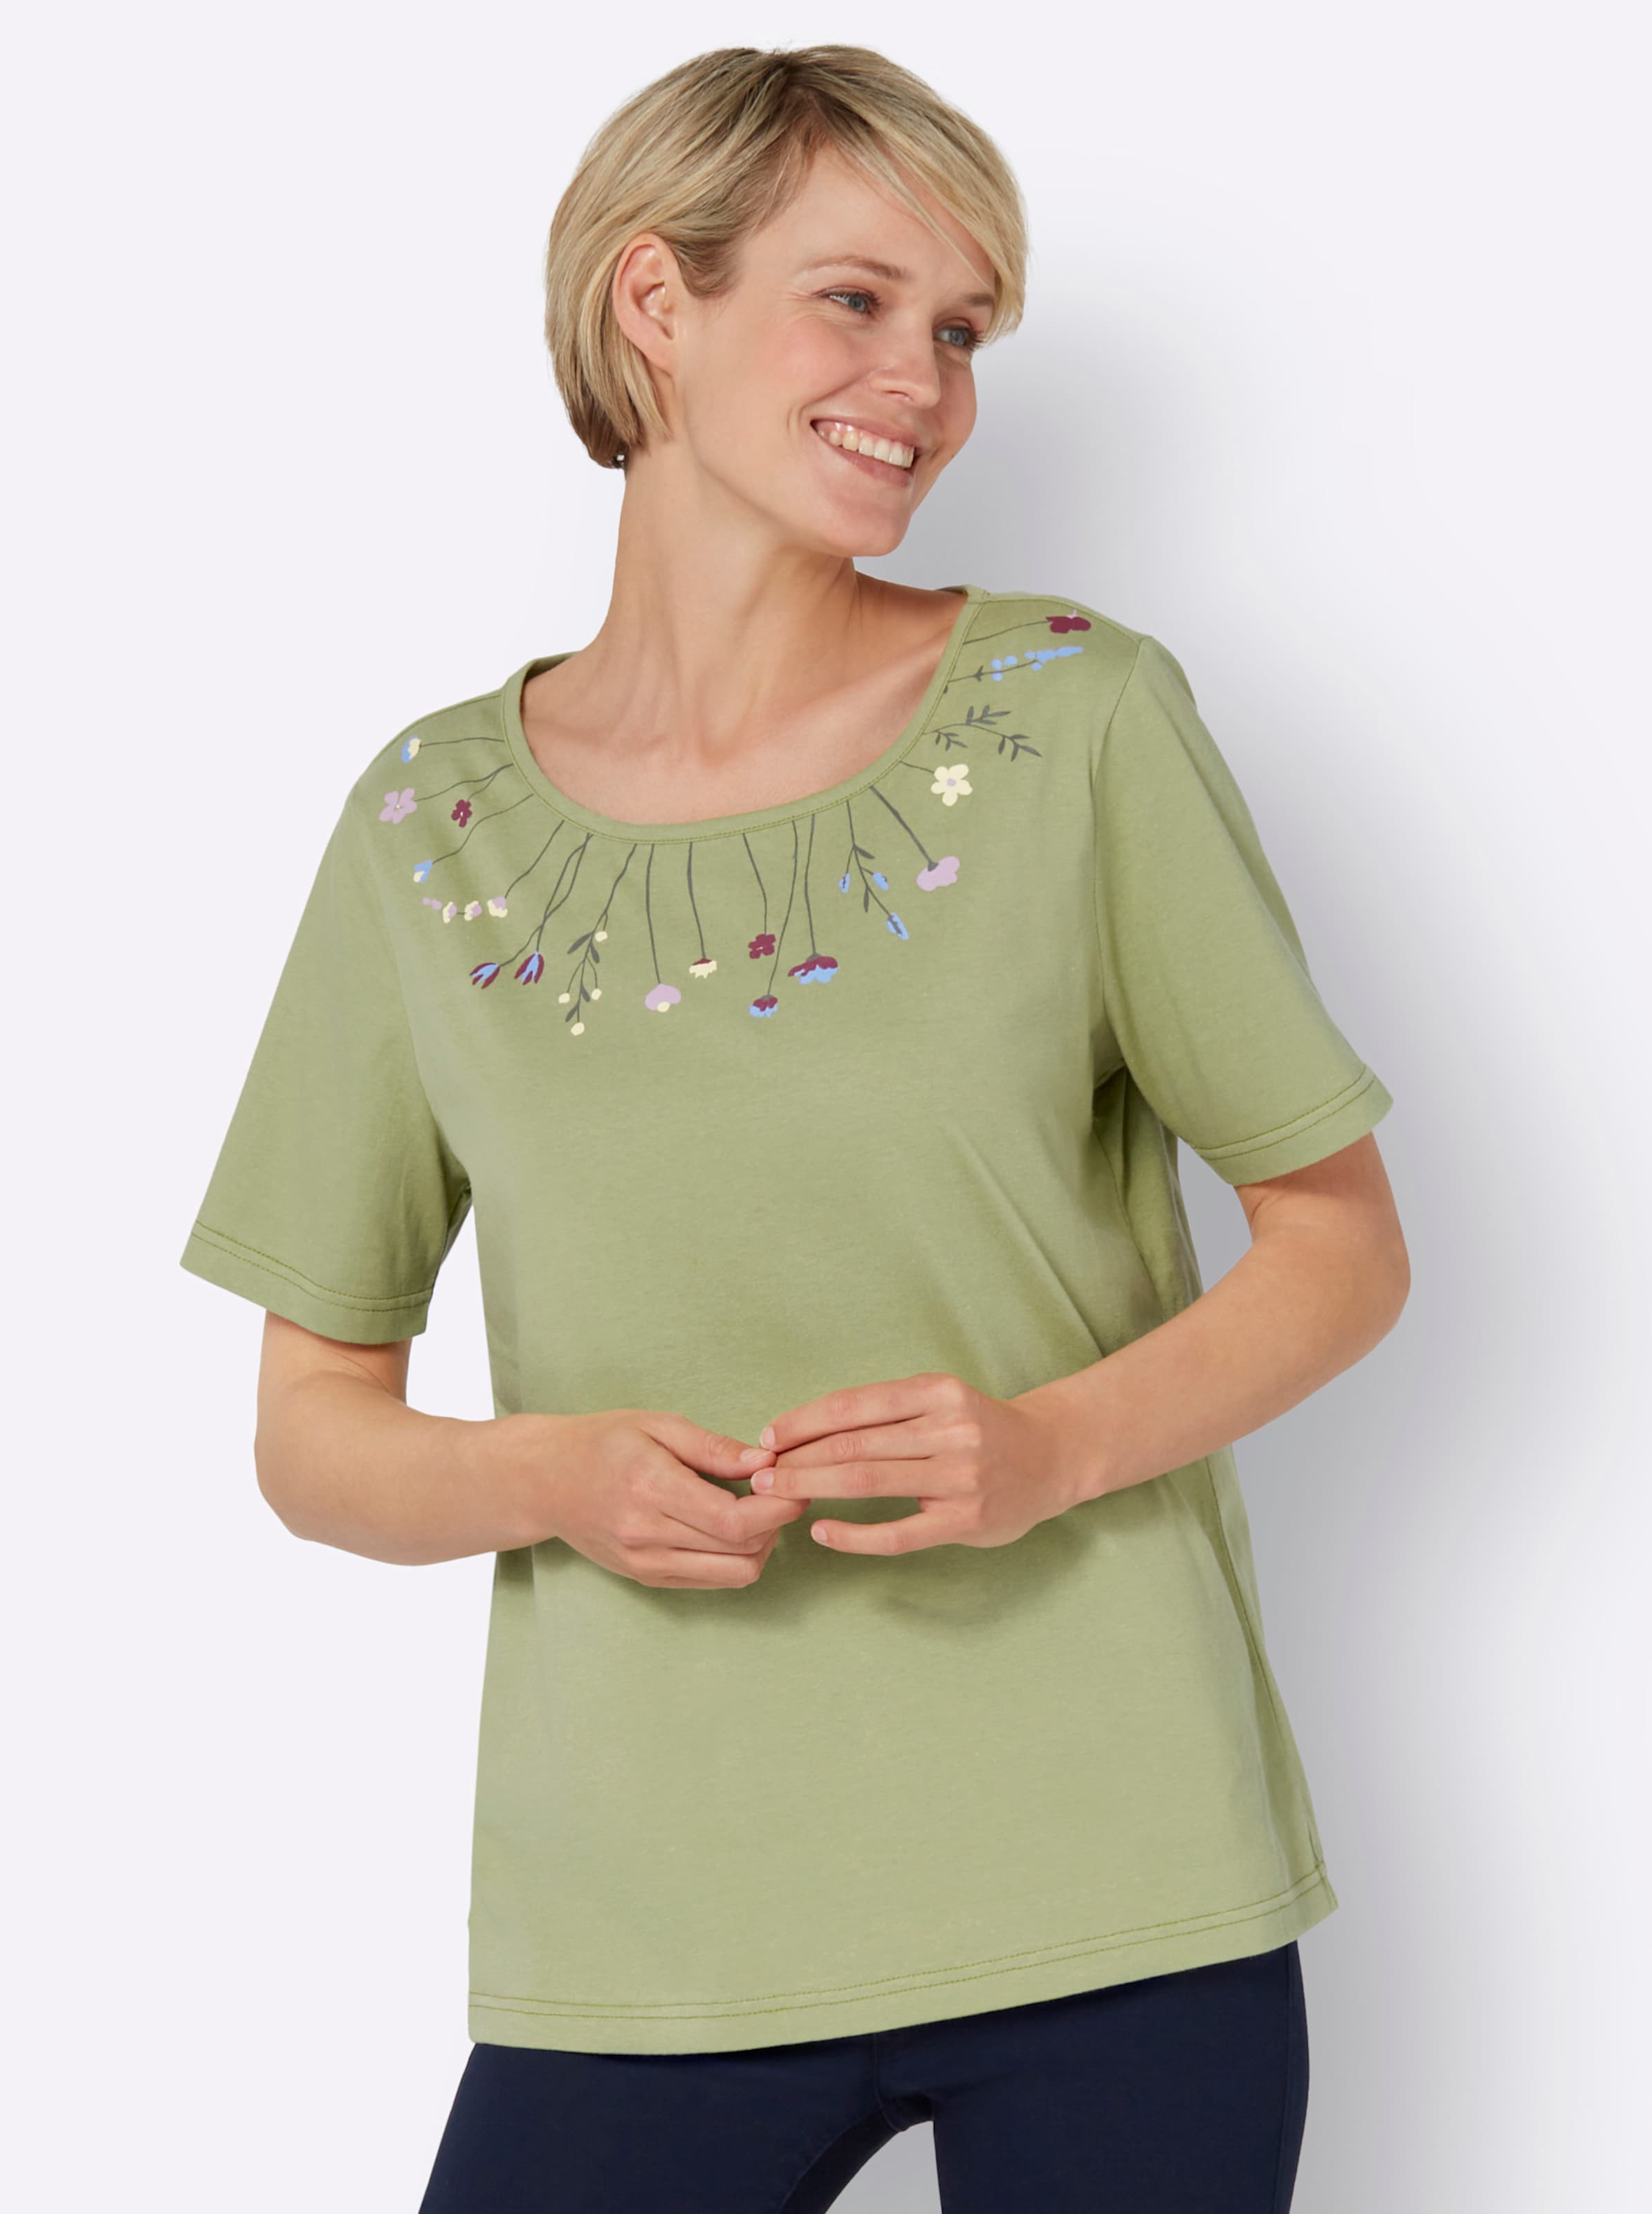 Witt Damen Rundhals-Shirt, lindgrün-himmelblau